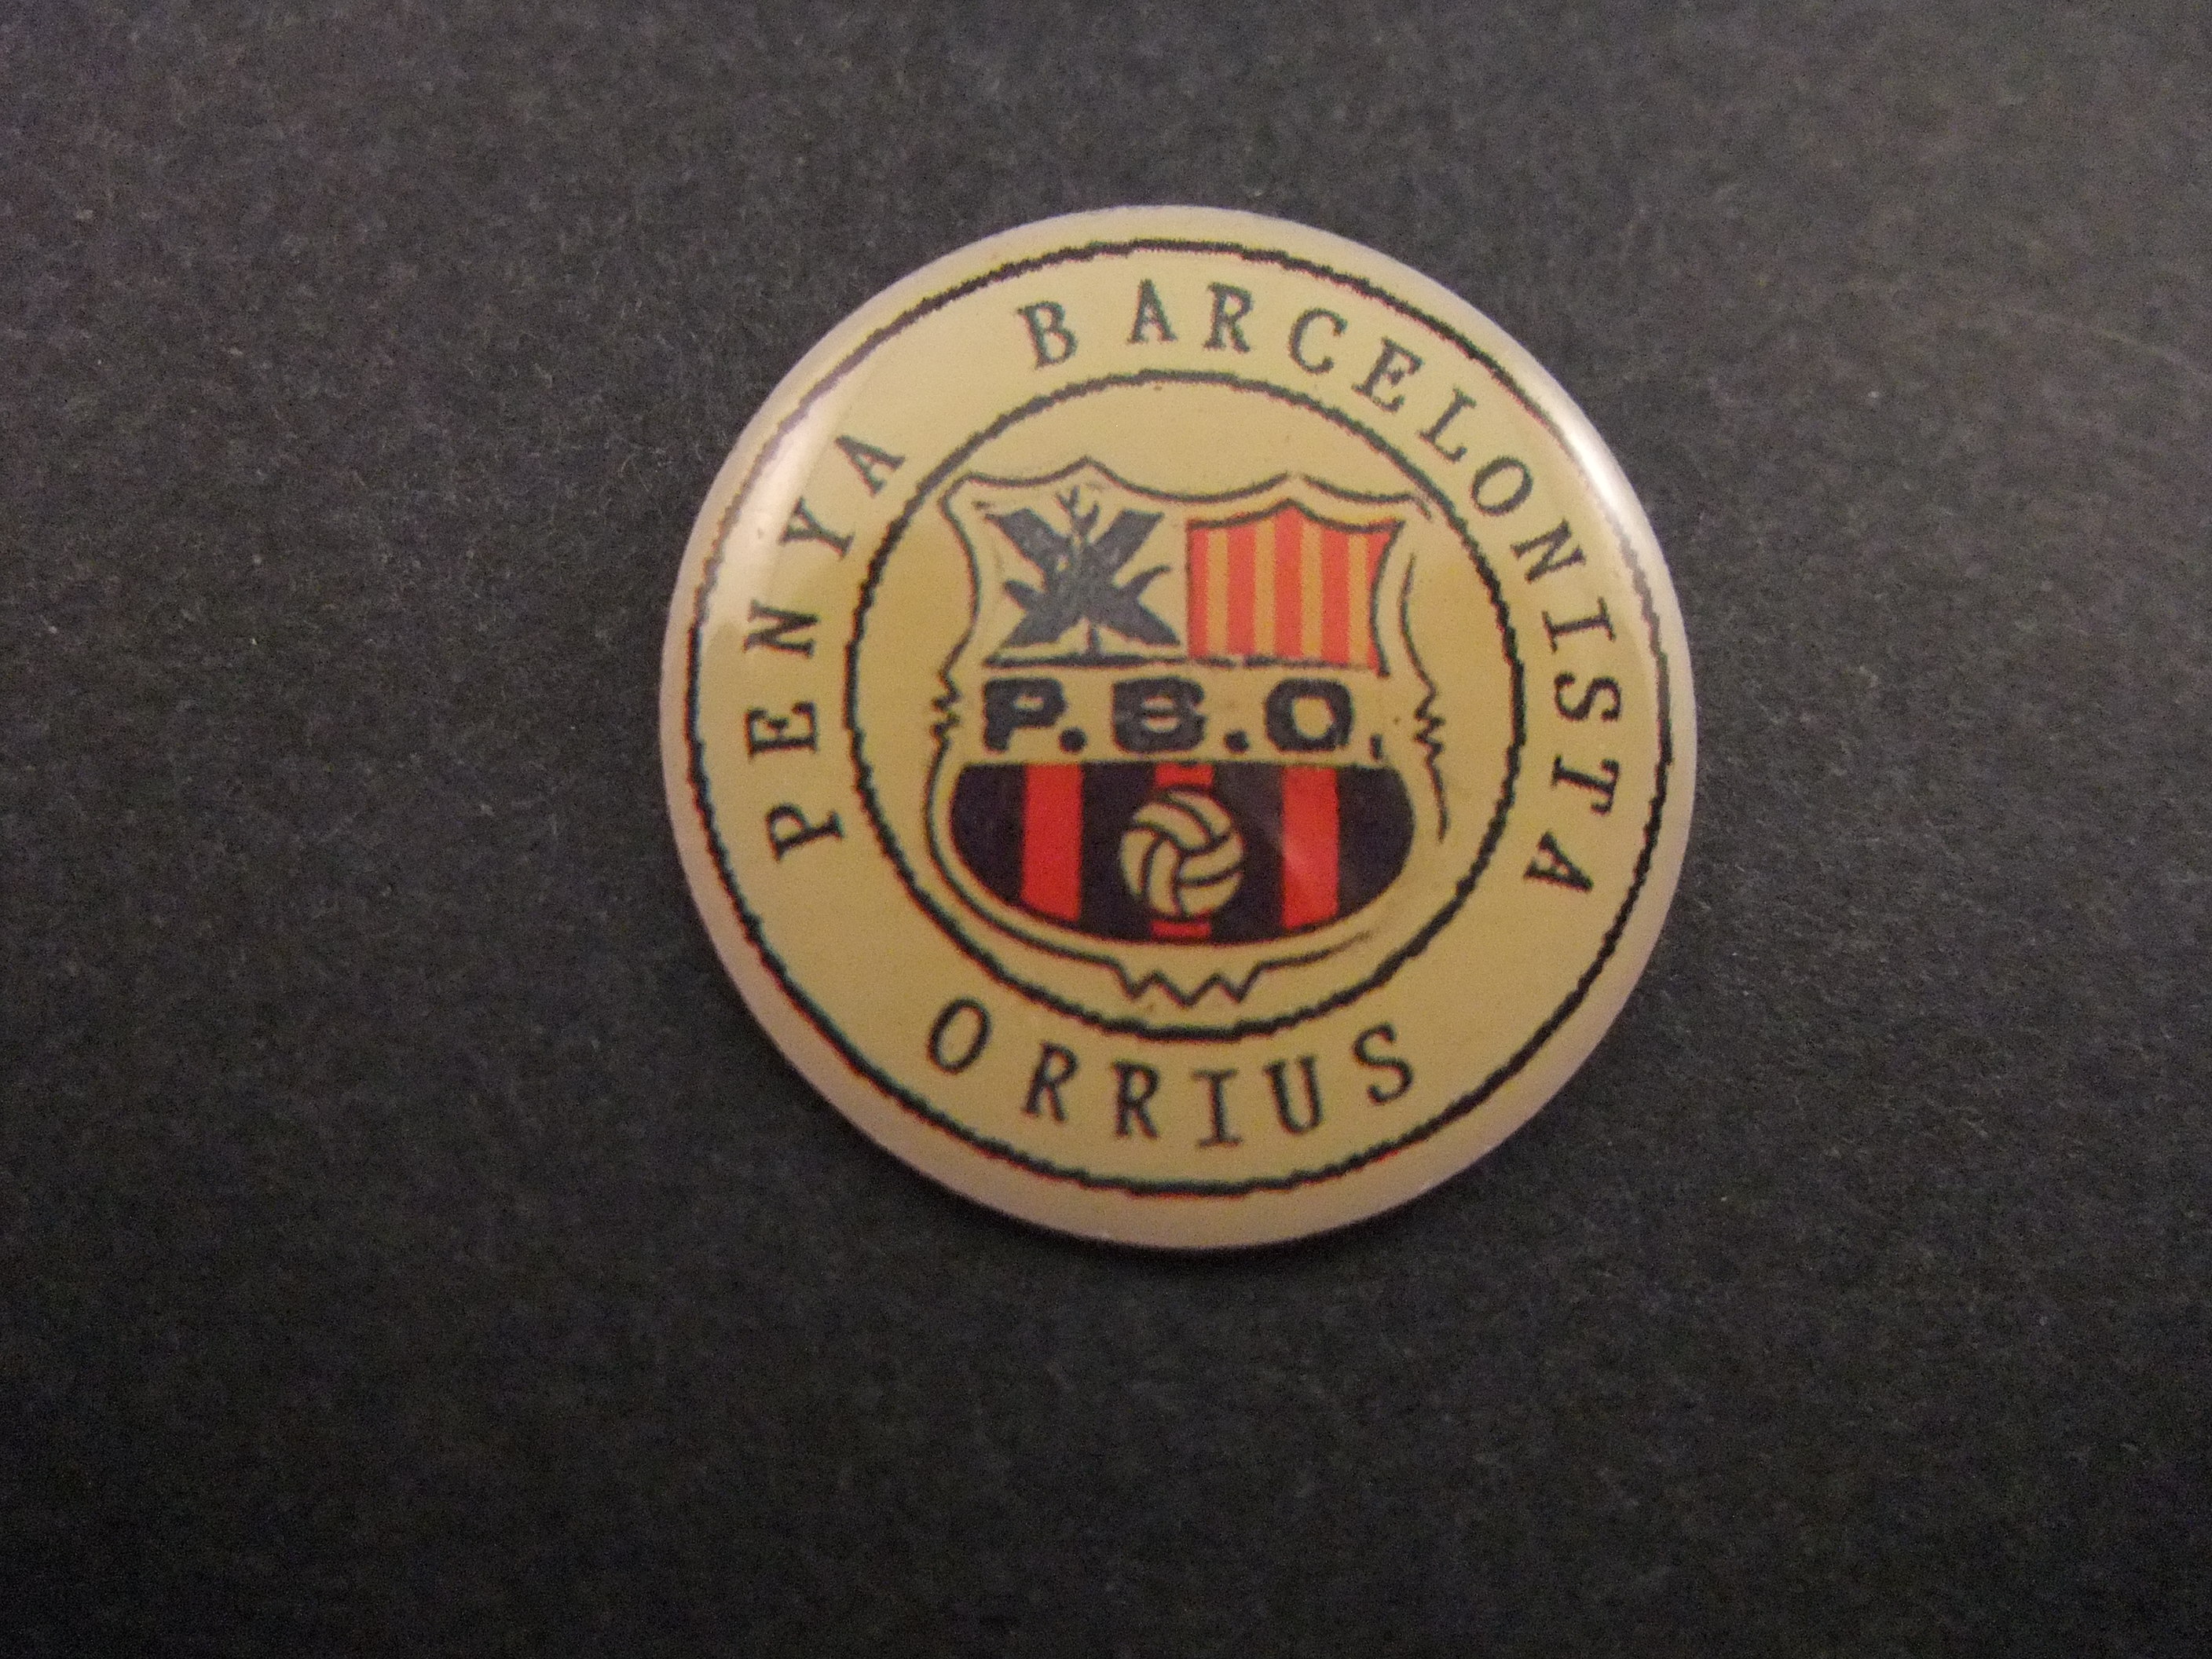 Penya Barcelonista Orrius( leden van voetbalclub Barcelona )